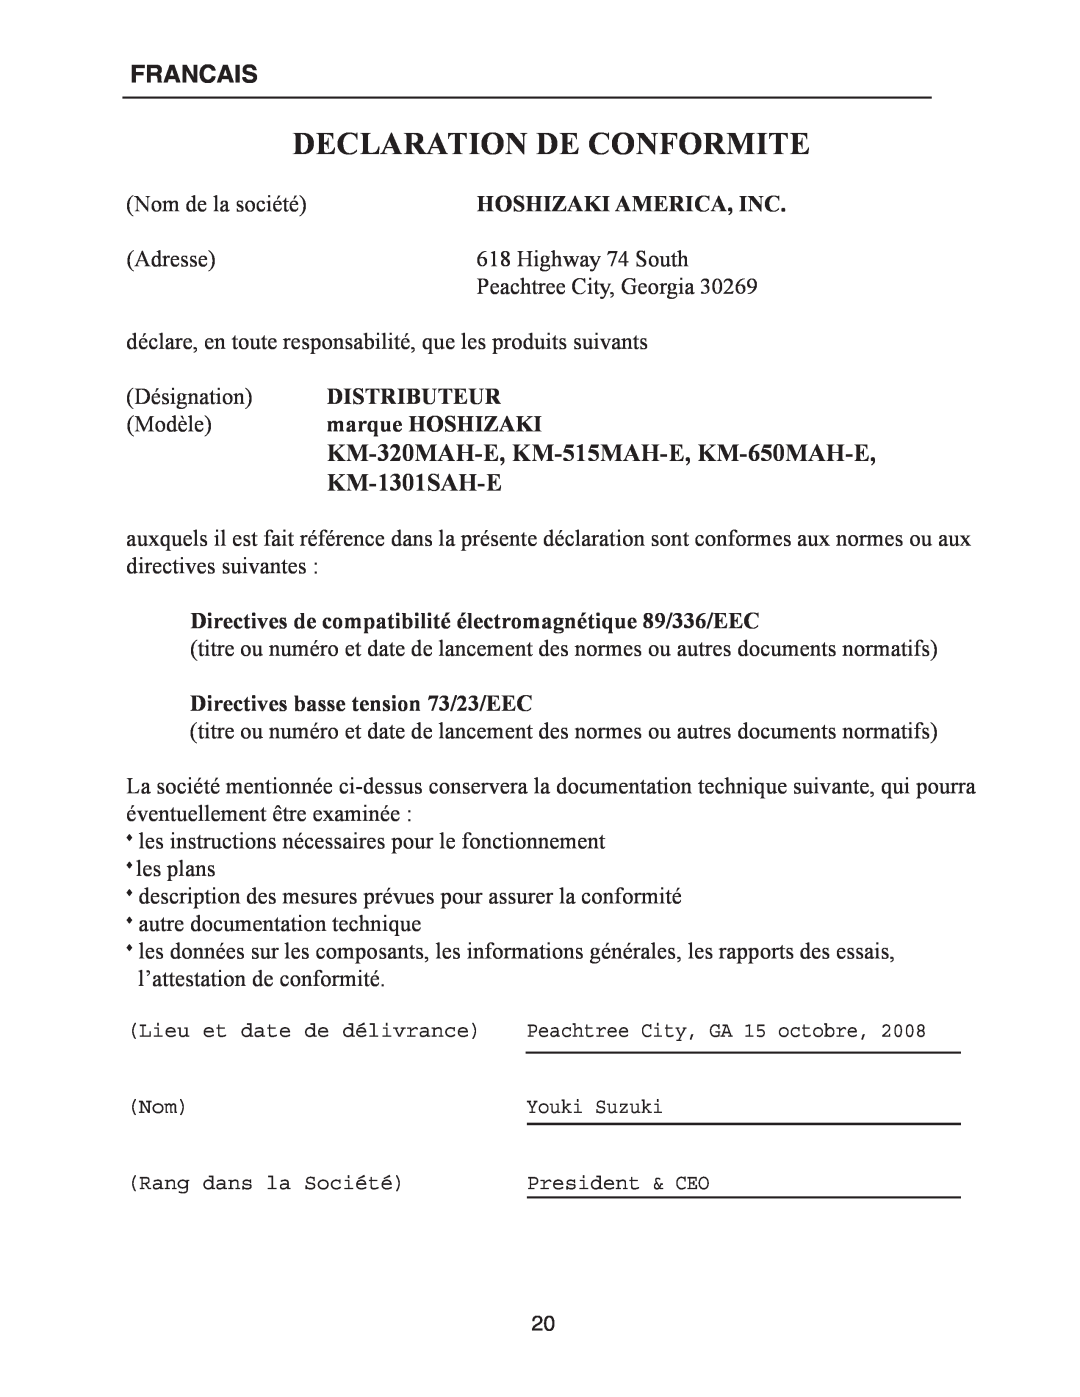 Hoshizaki Declaration De Conformite, Francais, KM-1301SAH-E, KM-320MAH-E, KM-515MAH-E, KM-650MAH-E, Distributeur 